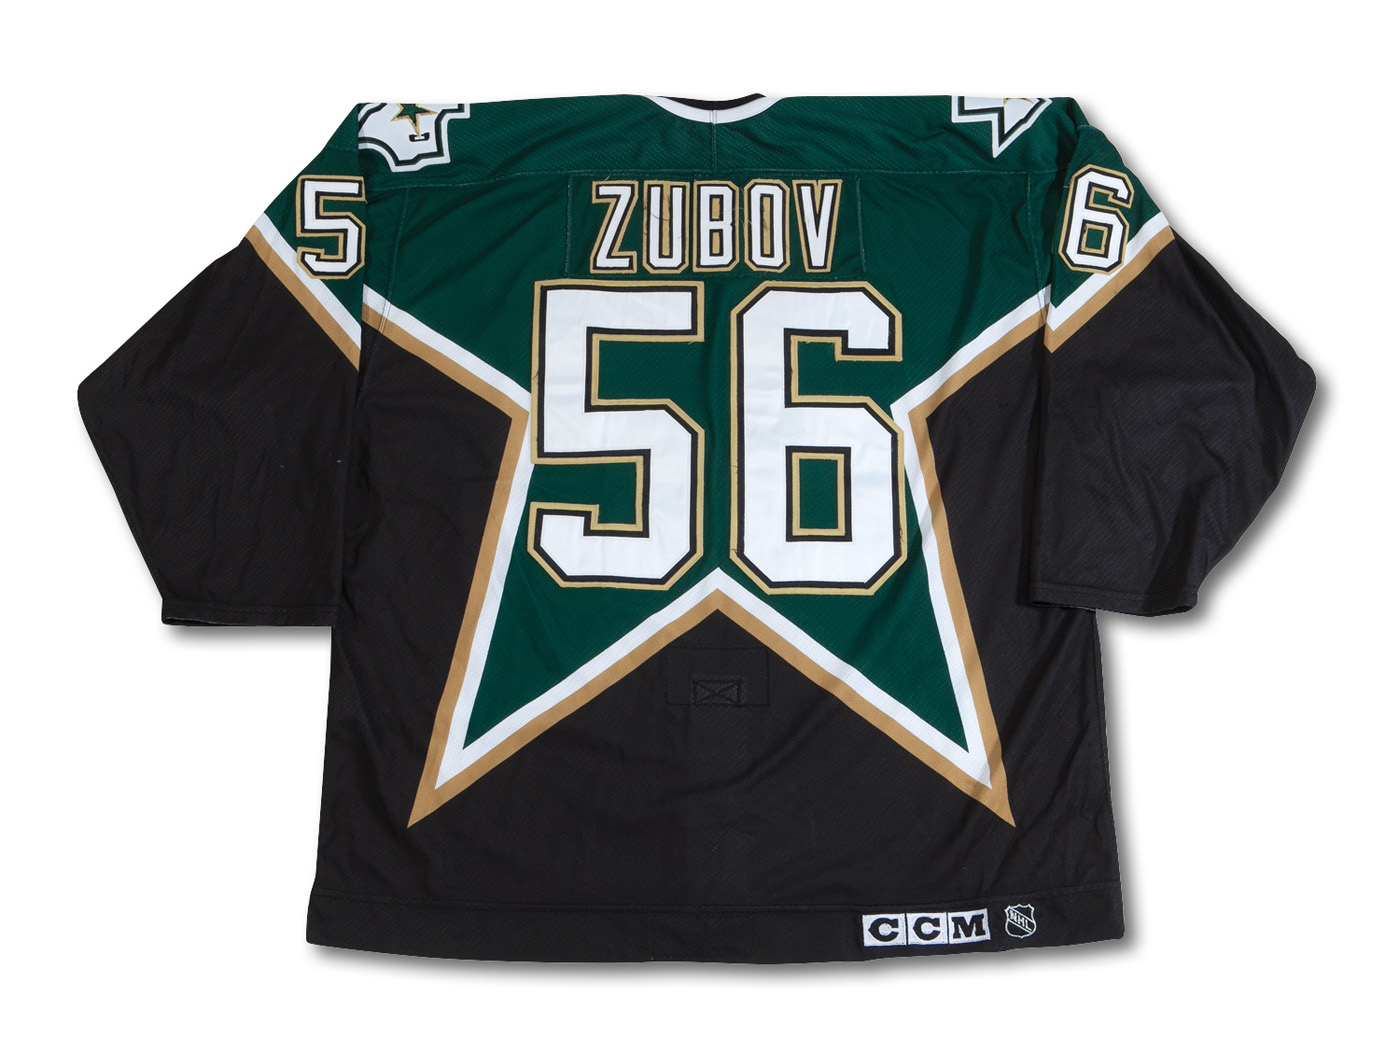 2006-07 Sergei Zubov Game Worn Dallas Stars Stanley Cup Playoffs